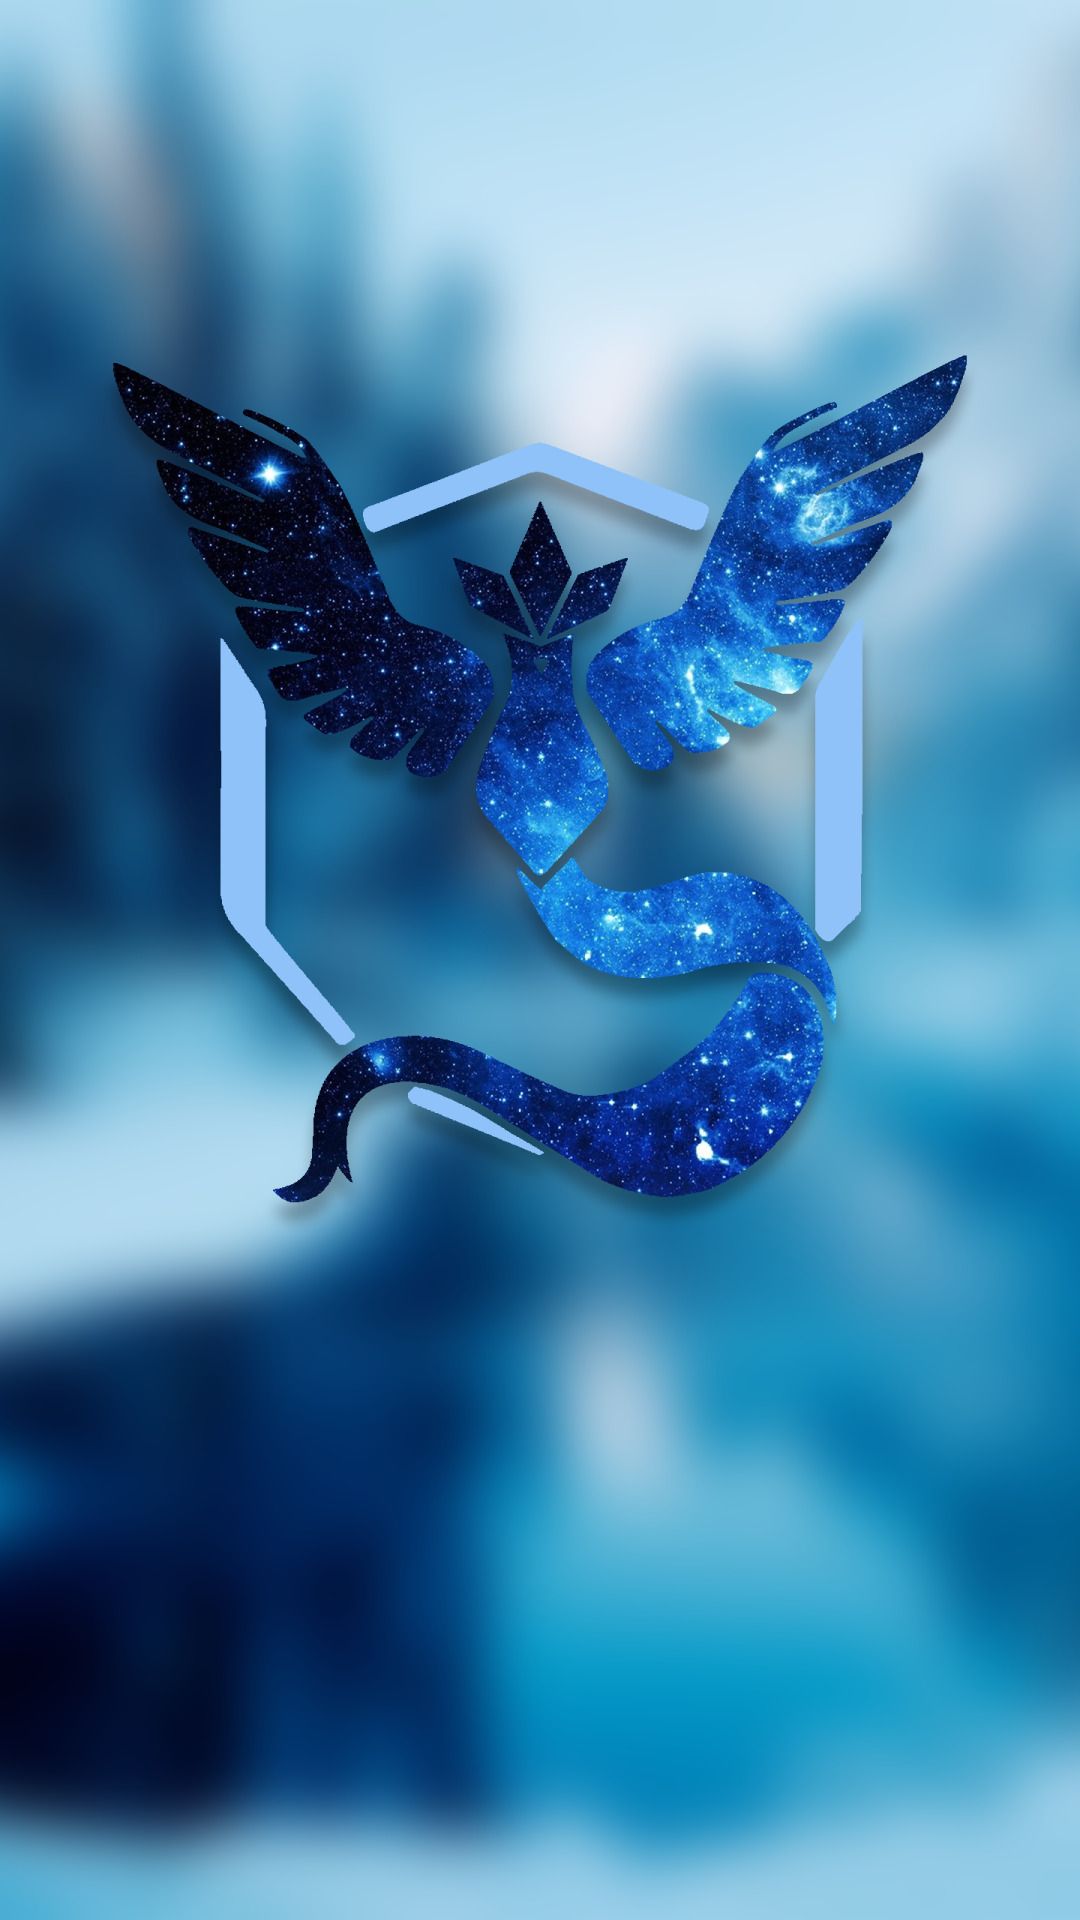 team mystic live wallpaper,blau,kobaltblau,wasser,elektrisches blau,erfundener charakter